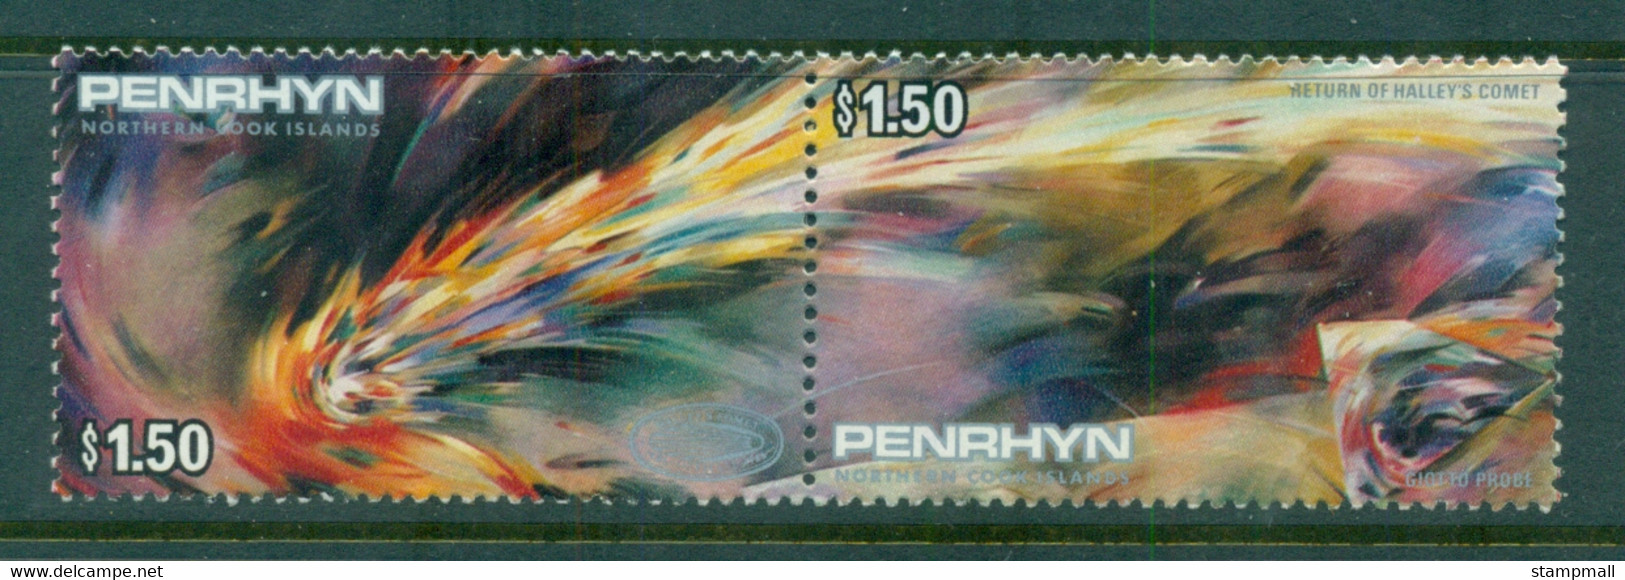 Penrhyn Is 1986 Halley's Comet MUH - Penrhyn